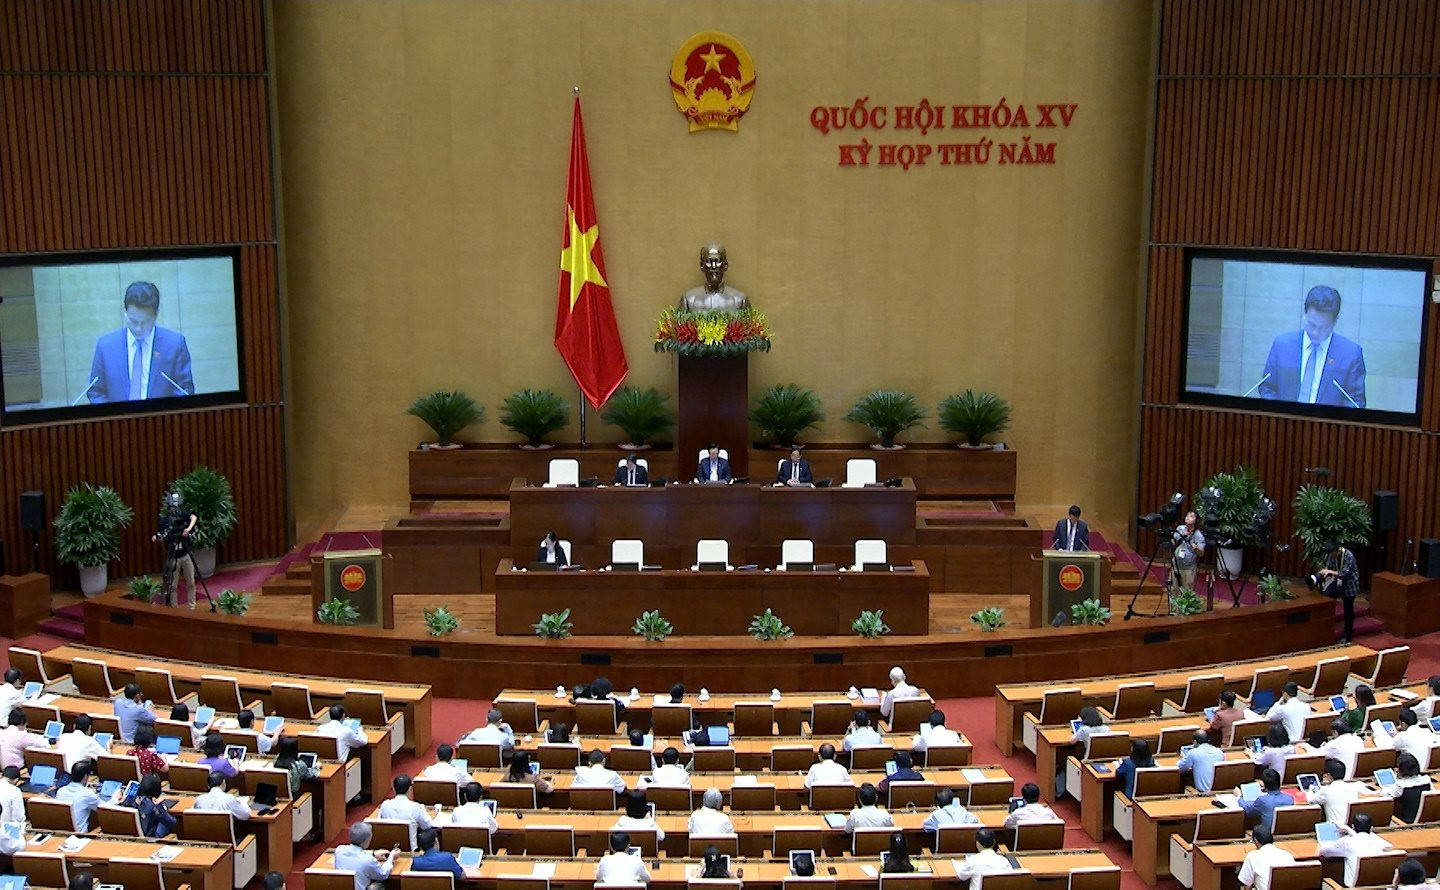 Bộ trưởng Bộ Tài nguyên và Môi trường Đặng Quốc Khánh báo cáo Quốc hội về dự án Luật Đất đai (sửa đổi)